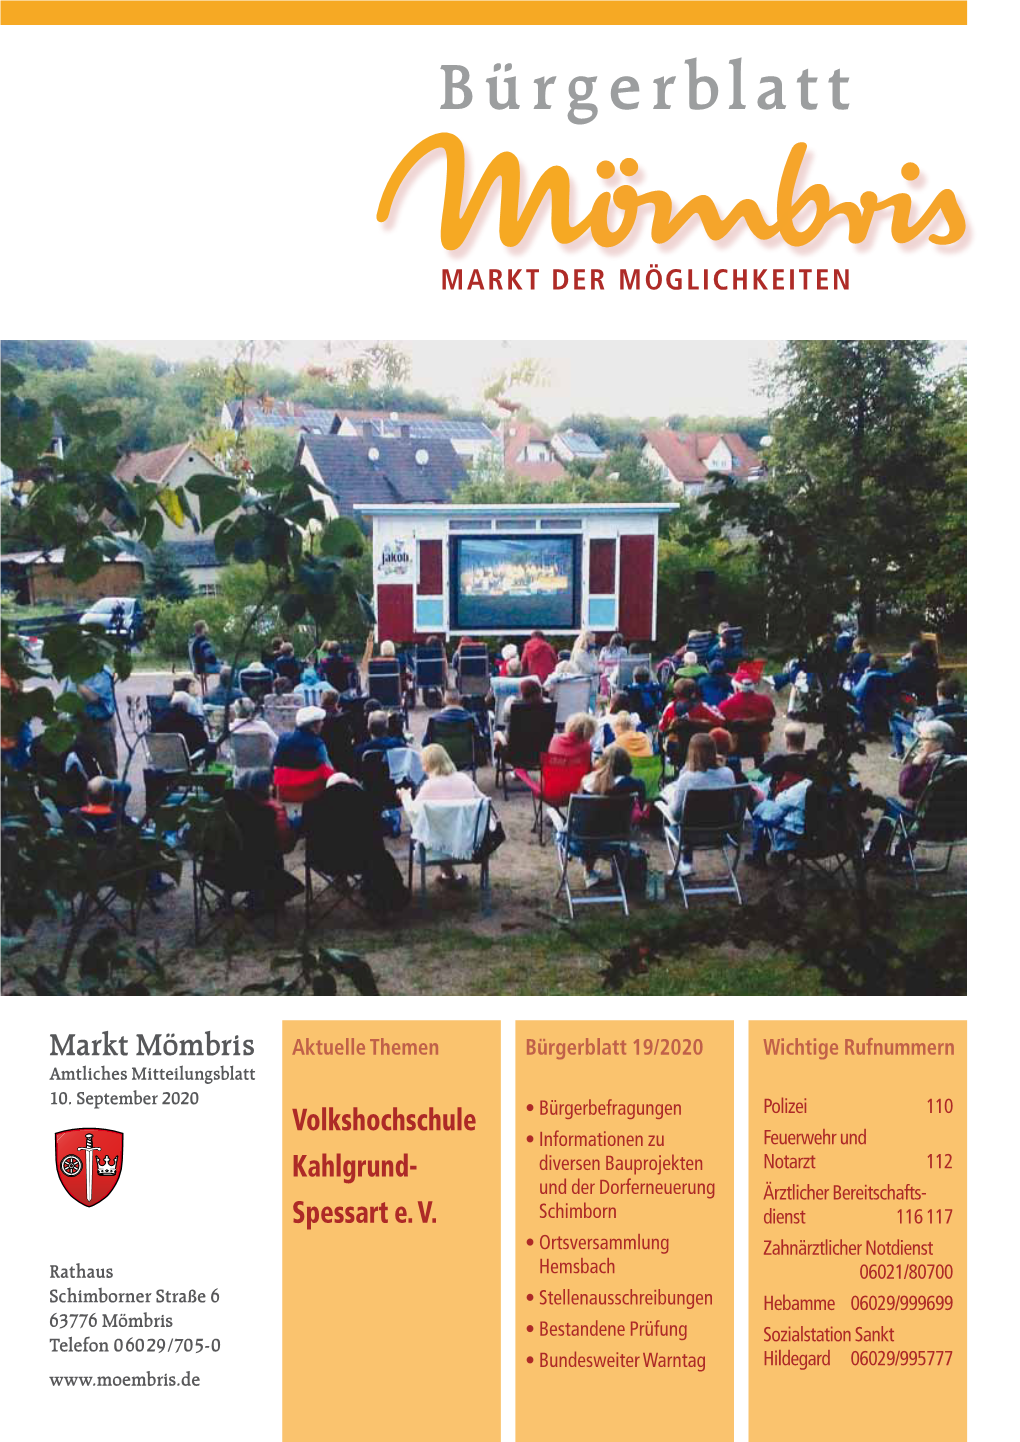 Bürgerblatt 19/2020 Wichtige Rufnummern Amtliches Mitteilungsblatt 10